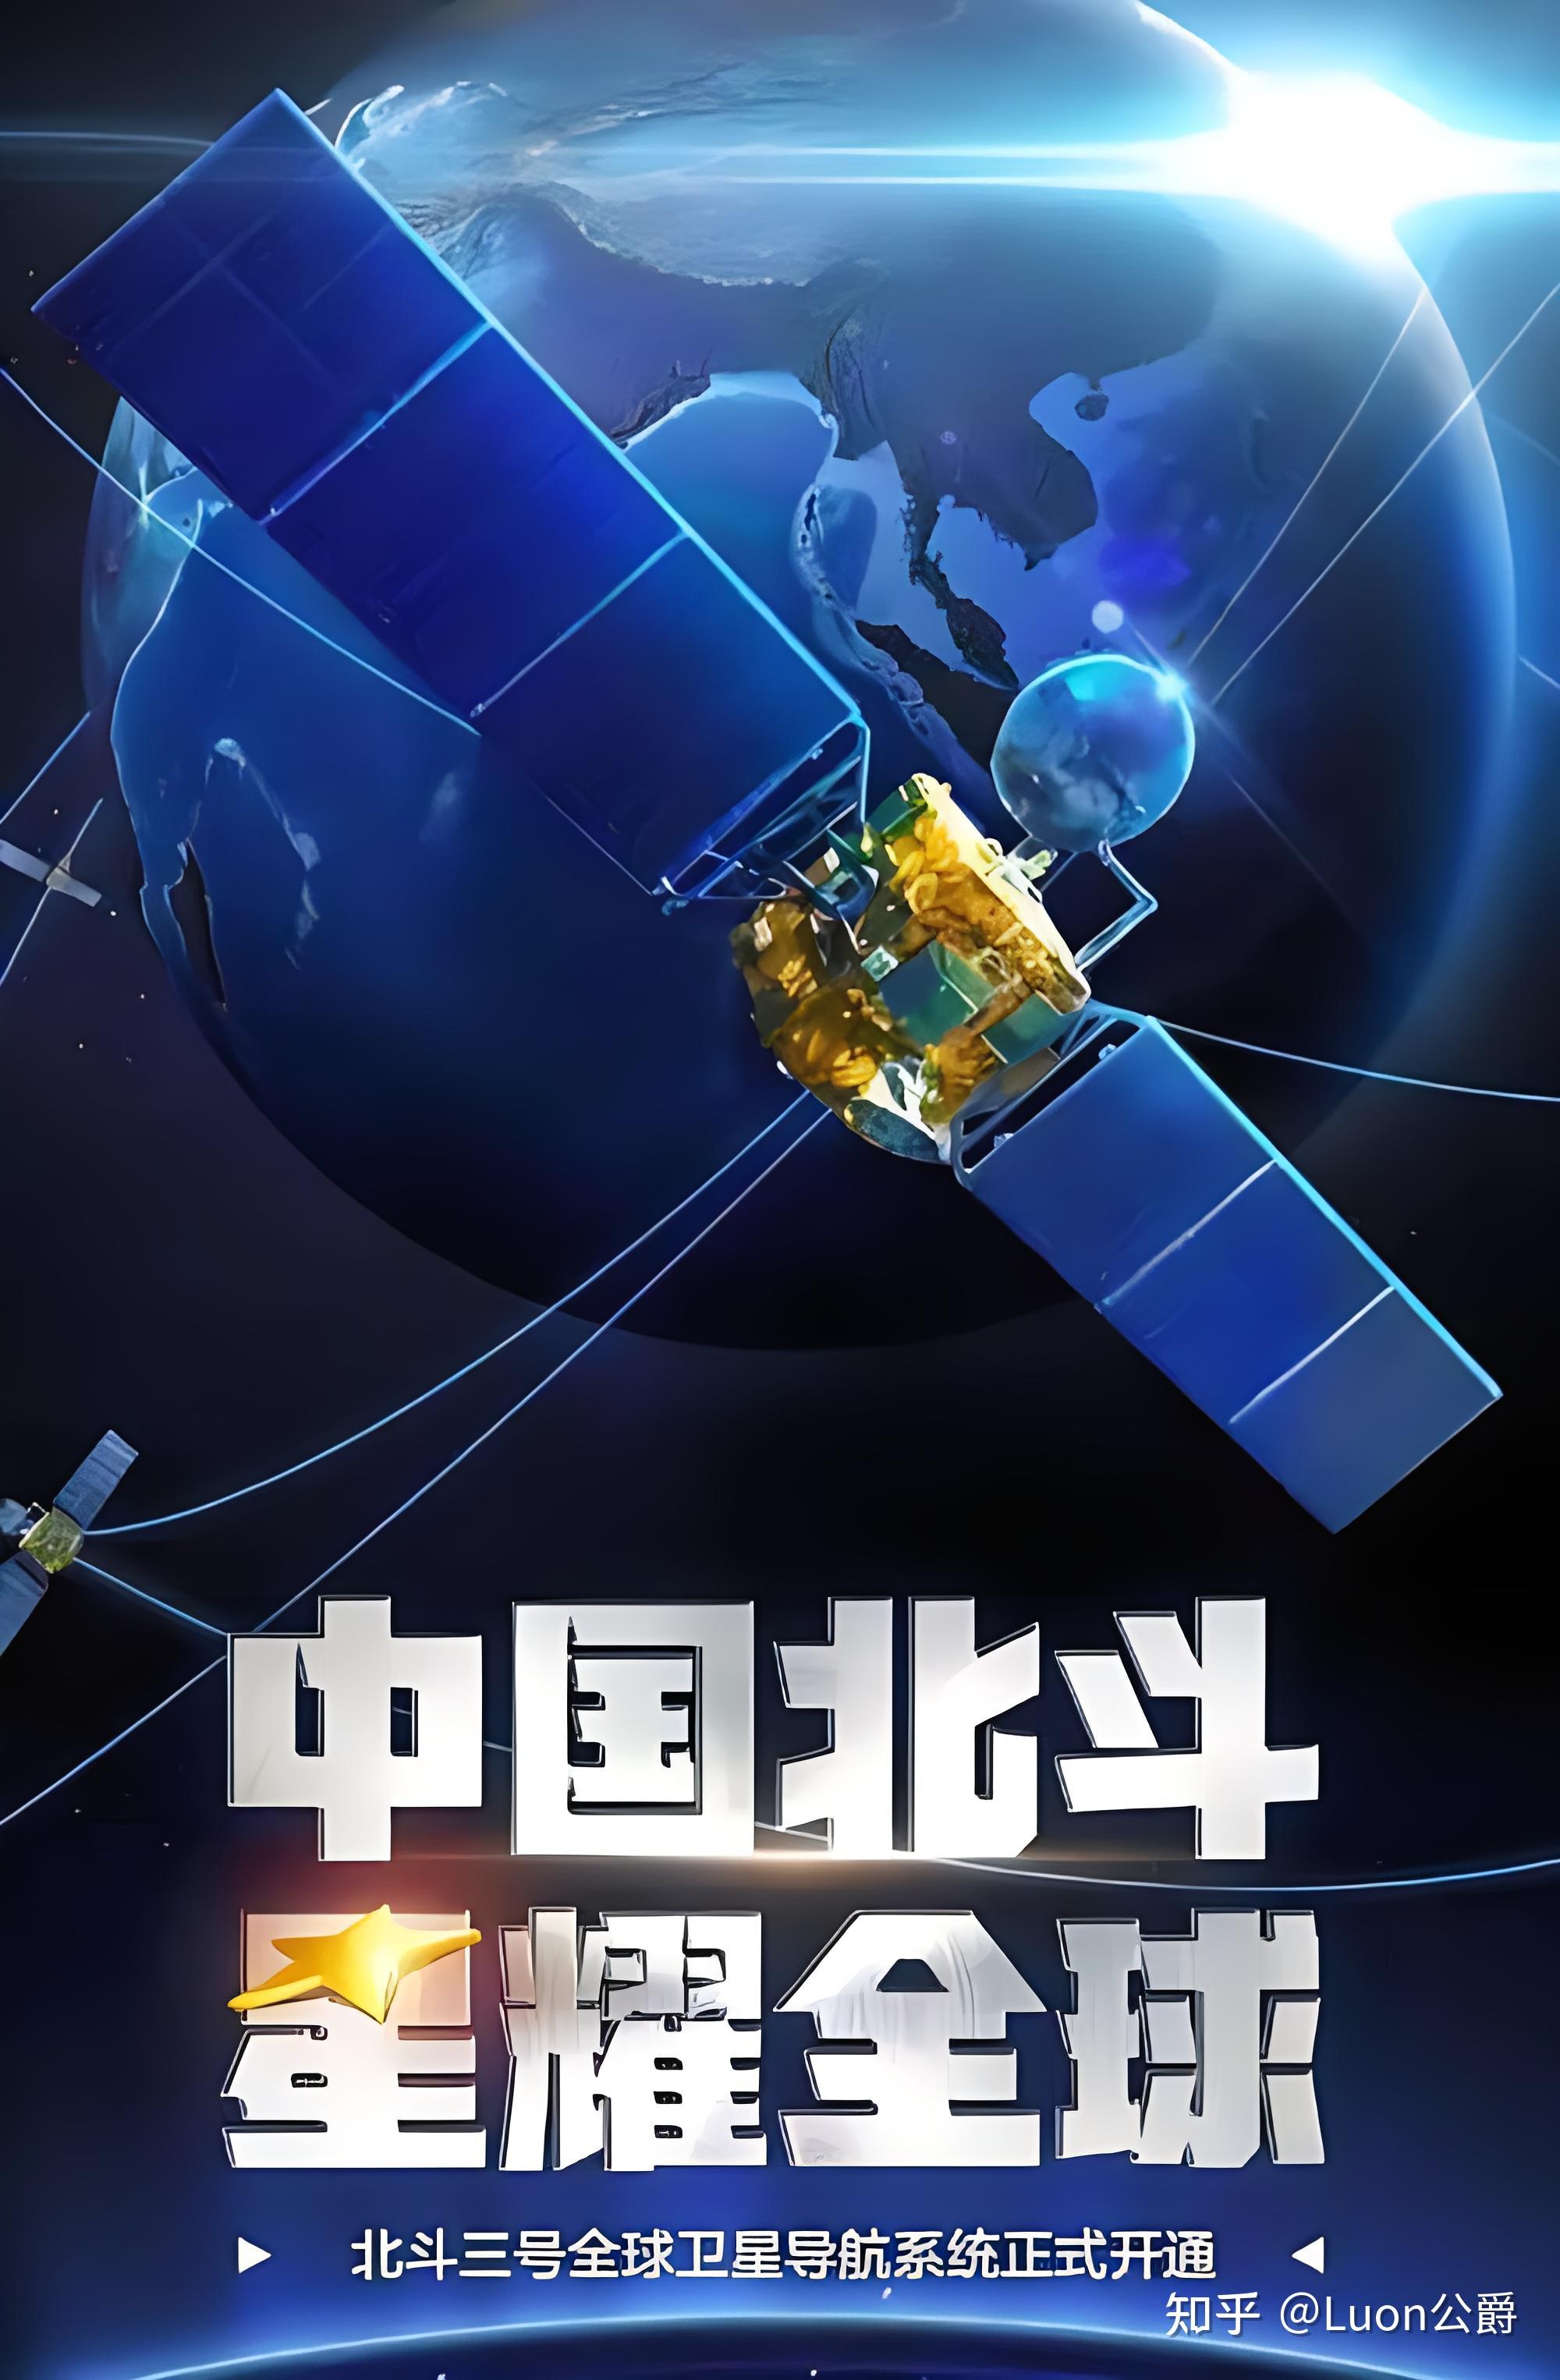 俄中国北斗卫星导航系统全球遥遥领先称